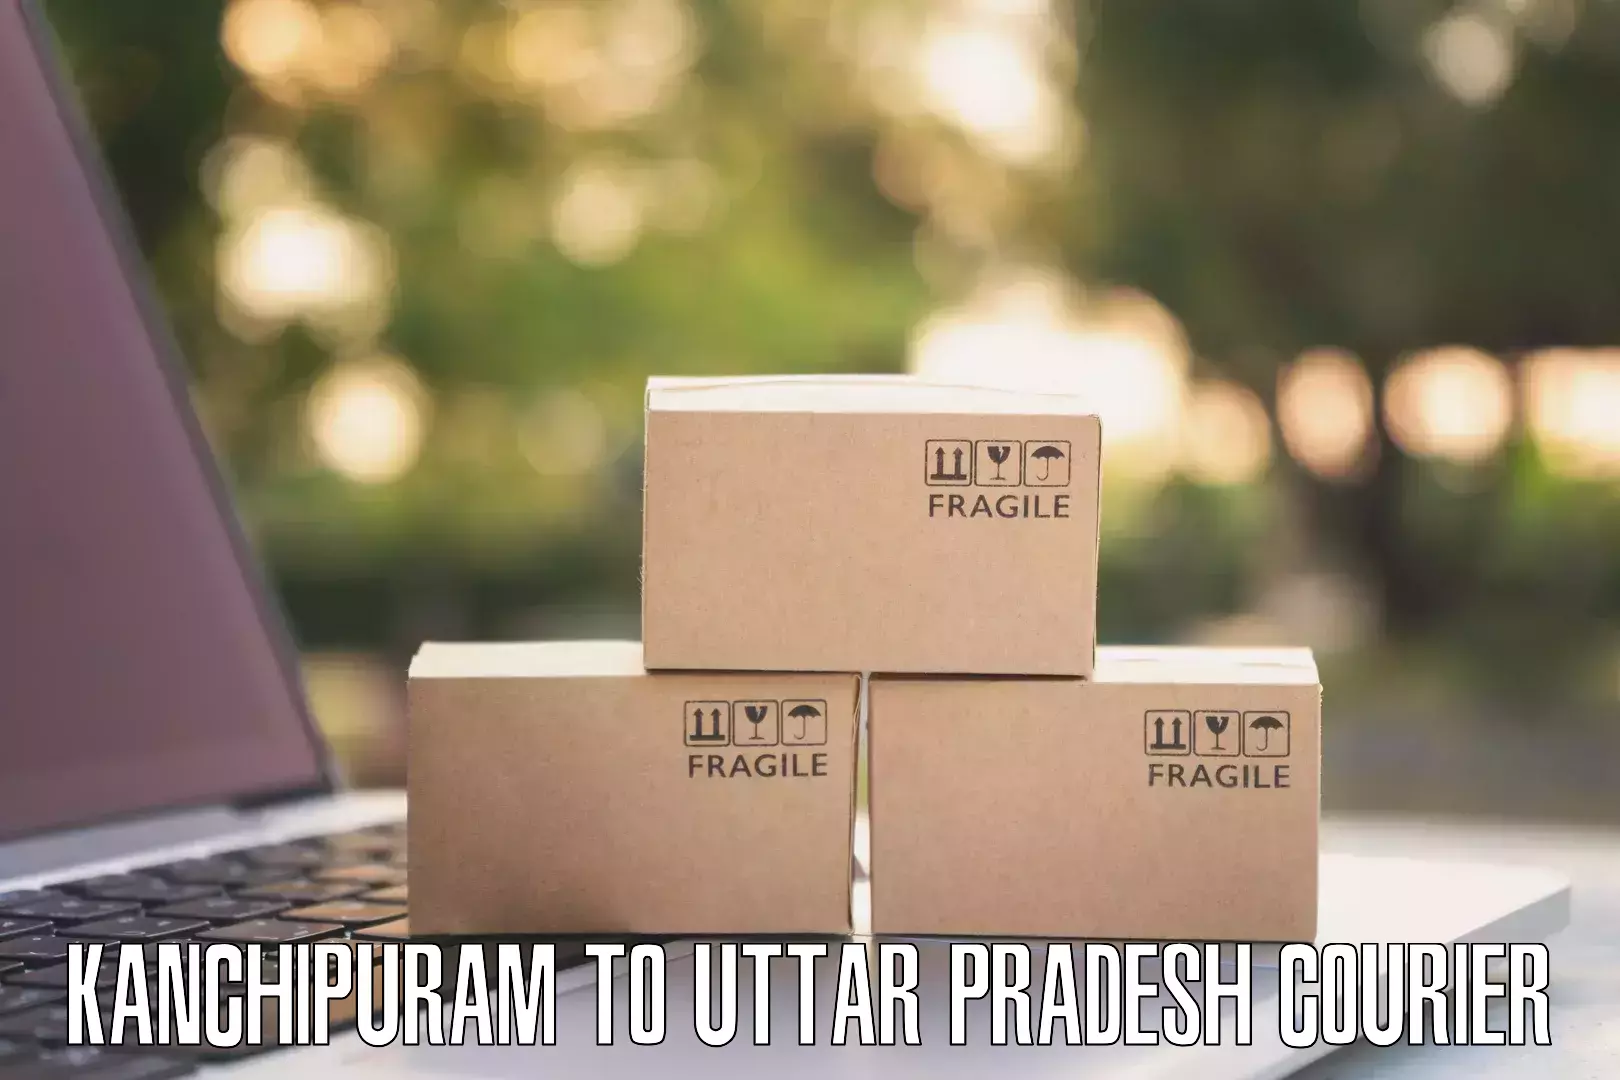 Large package courier Kanchipuram to Patti Pratapgarh